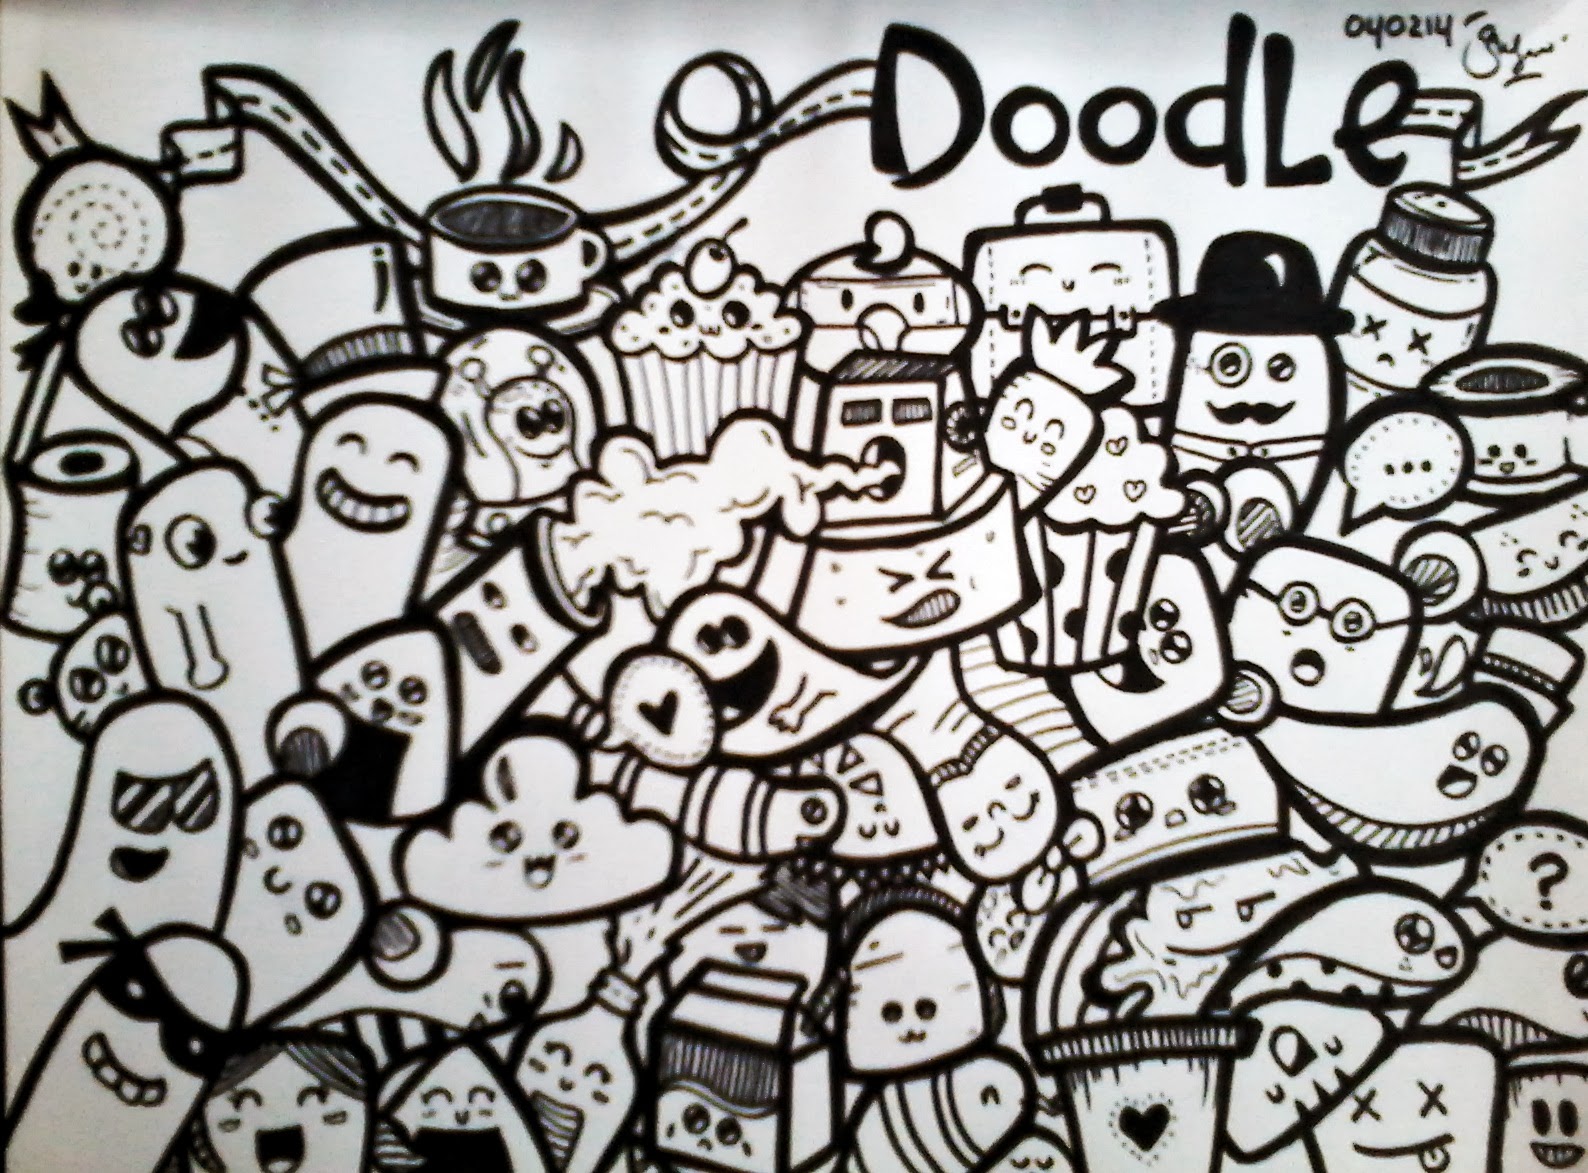 Gambar Doodle Doraemon Populer Dan